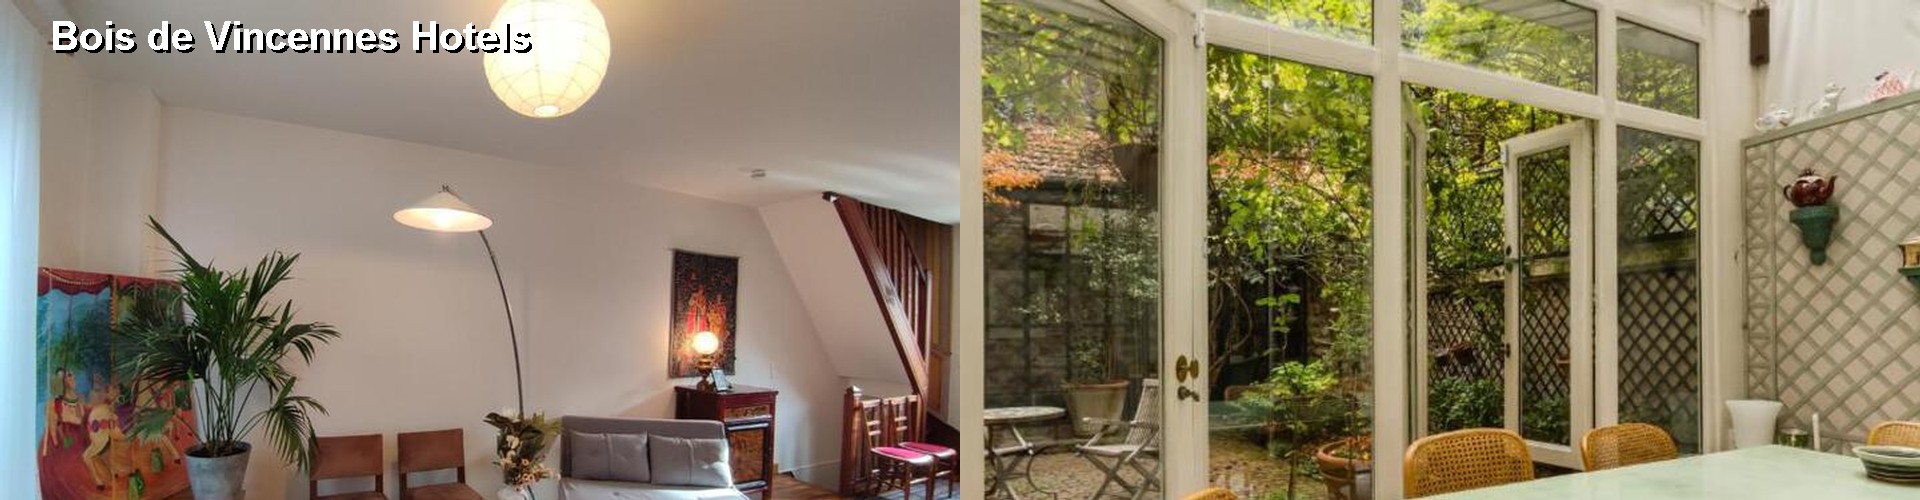 5 Best Hotels near Bois de Vincennes